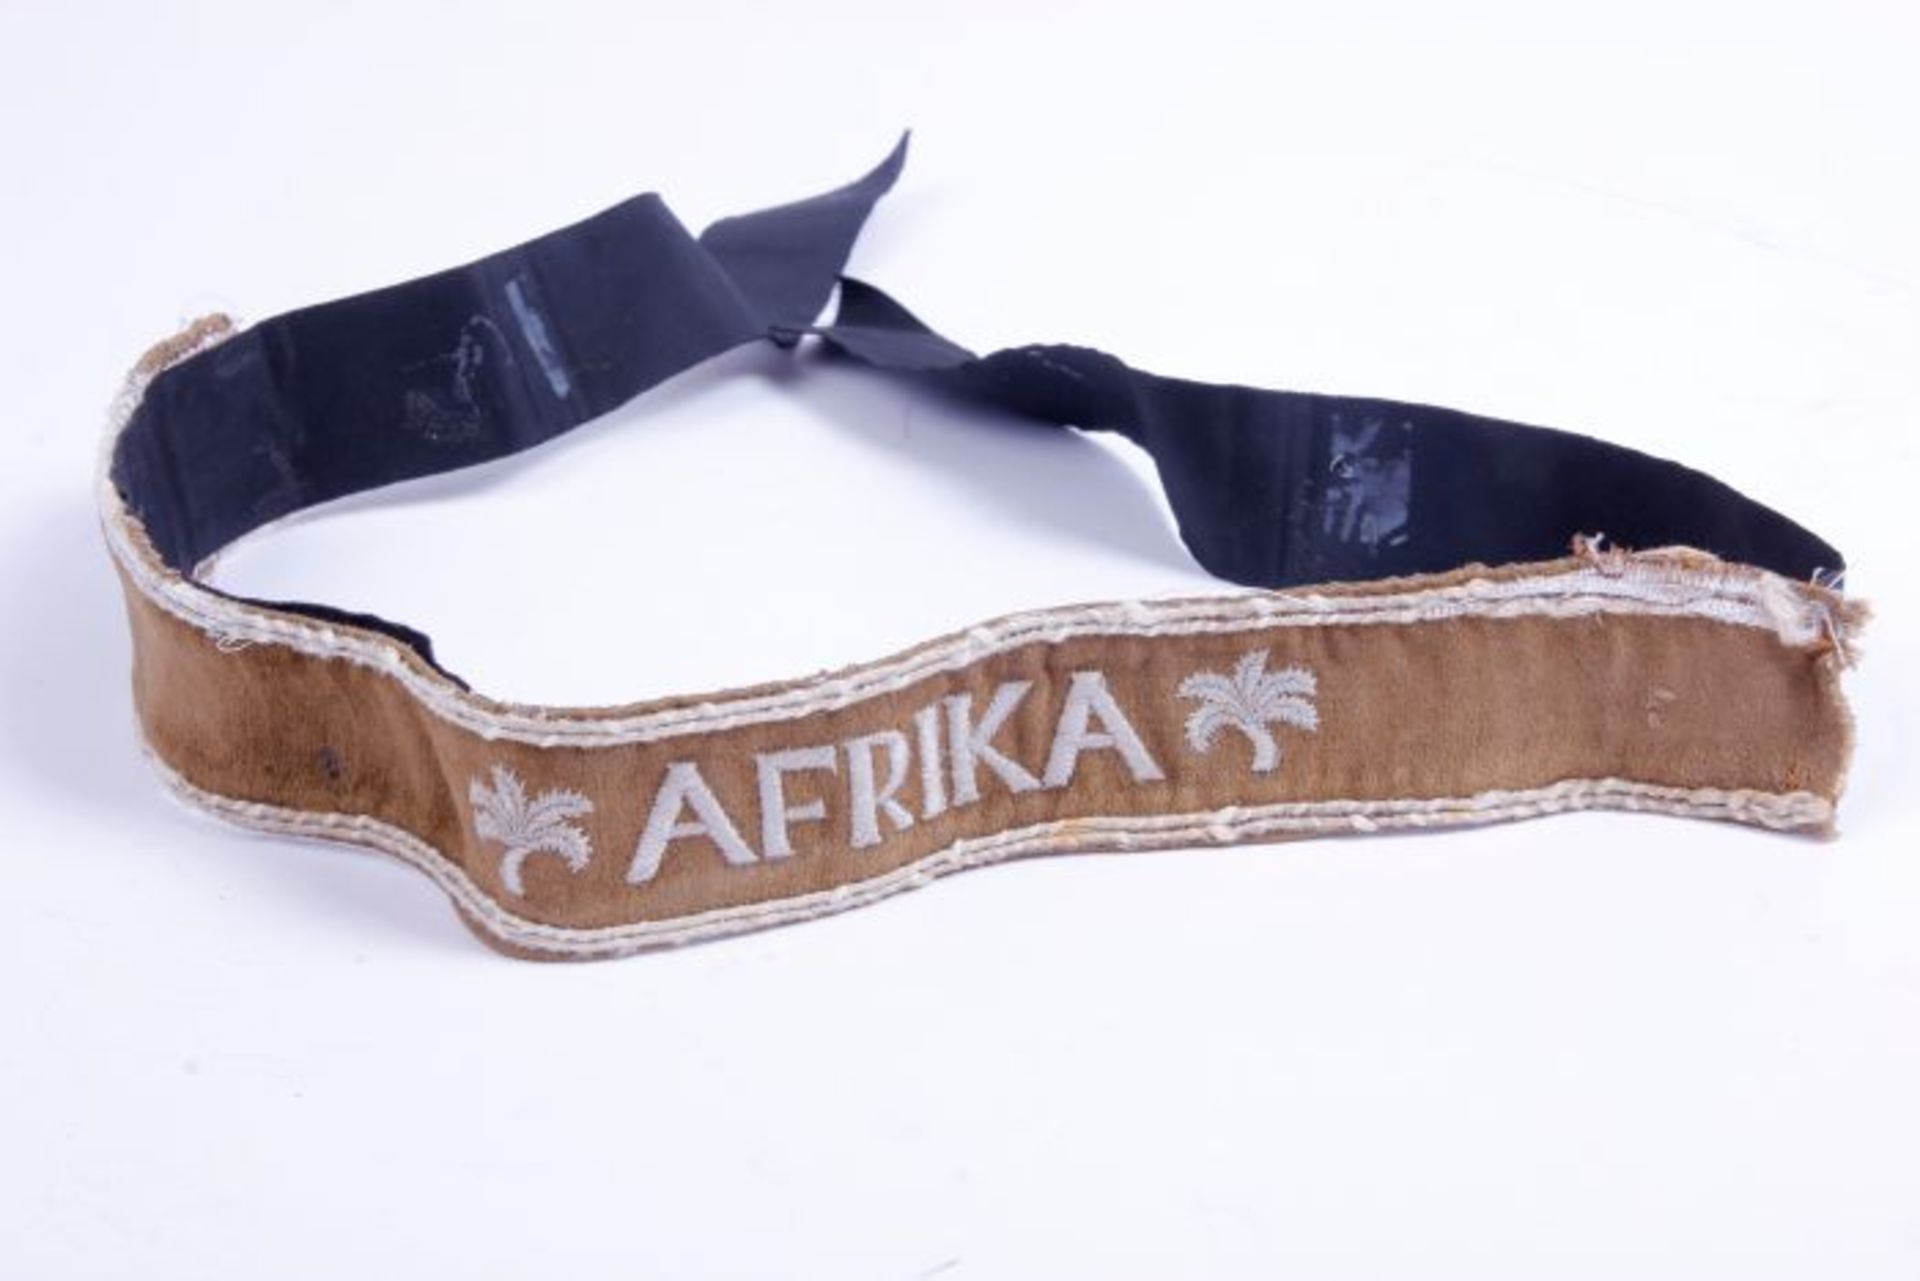 Ärmelband AfrikaÄrmelband Afrika auf Kamelhaar in der Standardausführung, aufgenäht auf ein